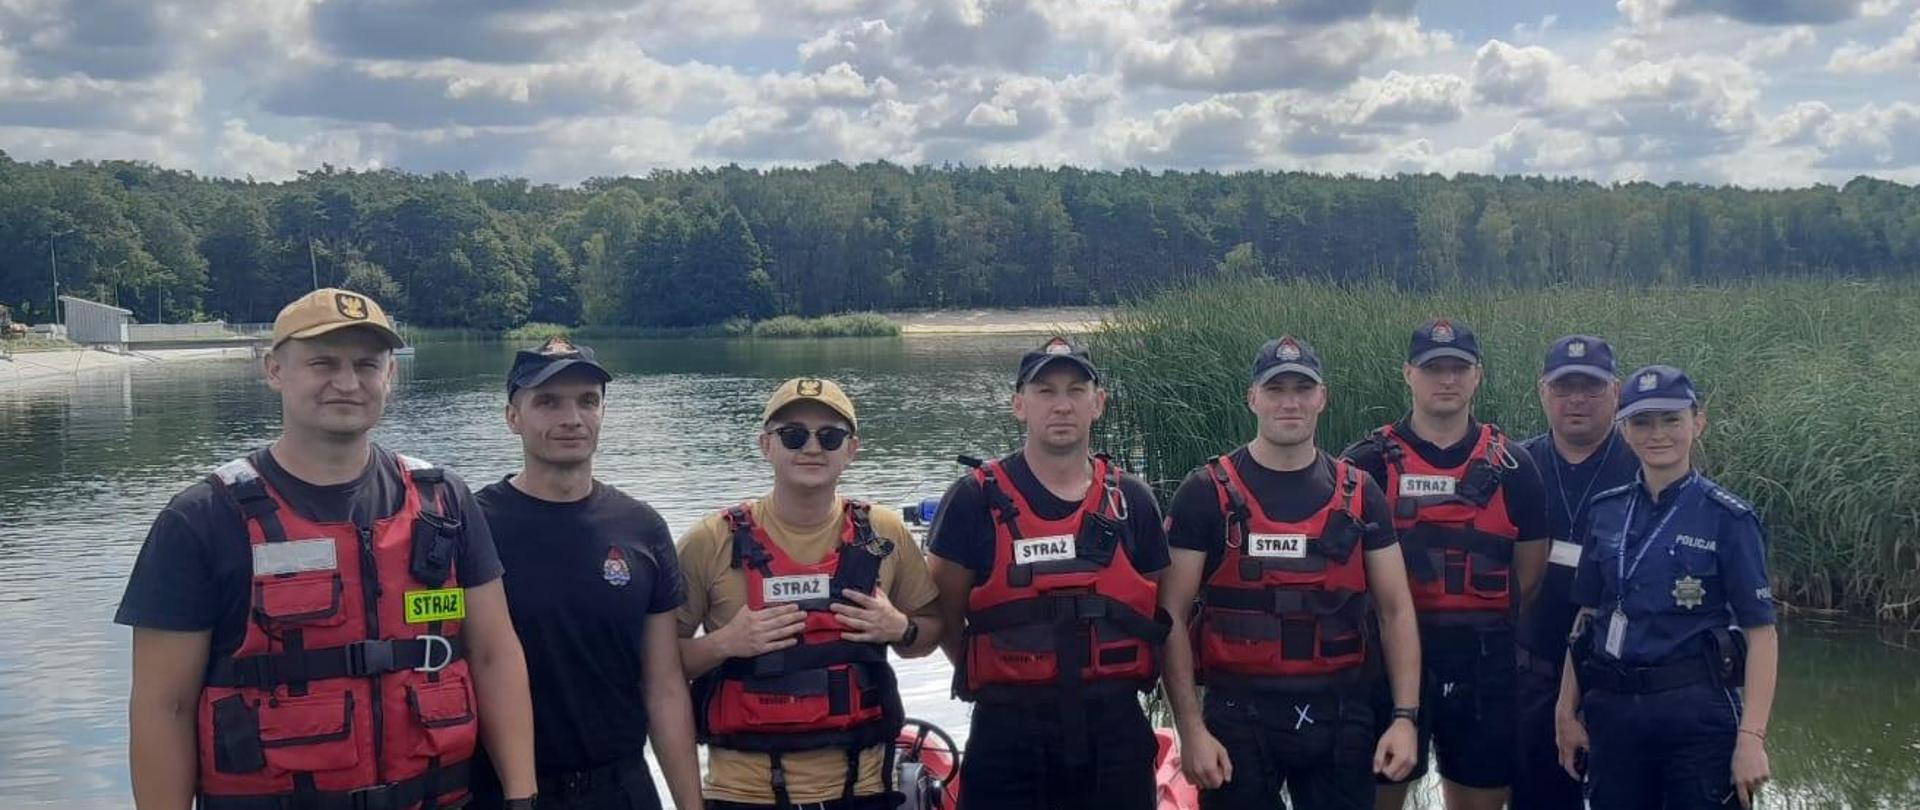 Zdjęcie grupowe uczestników patrolu wodnego, strażaków i policjantów, w tle widoczne jezioro